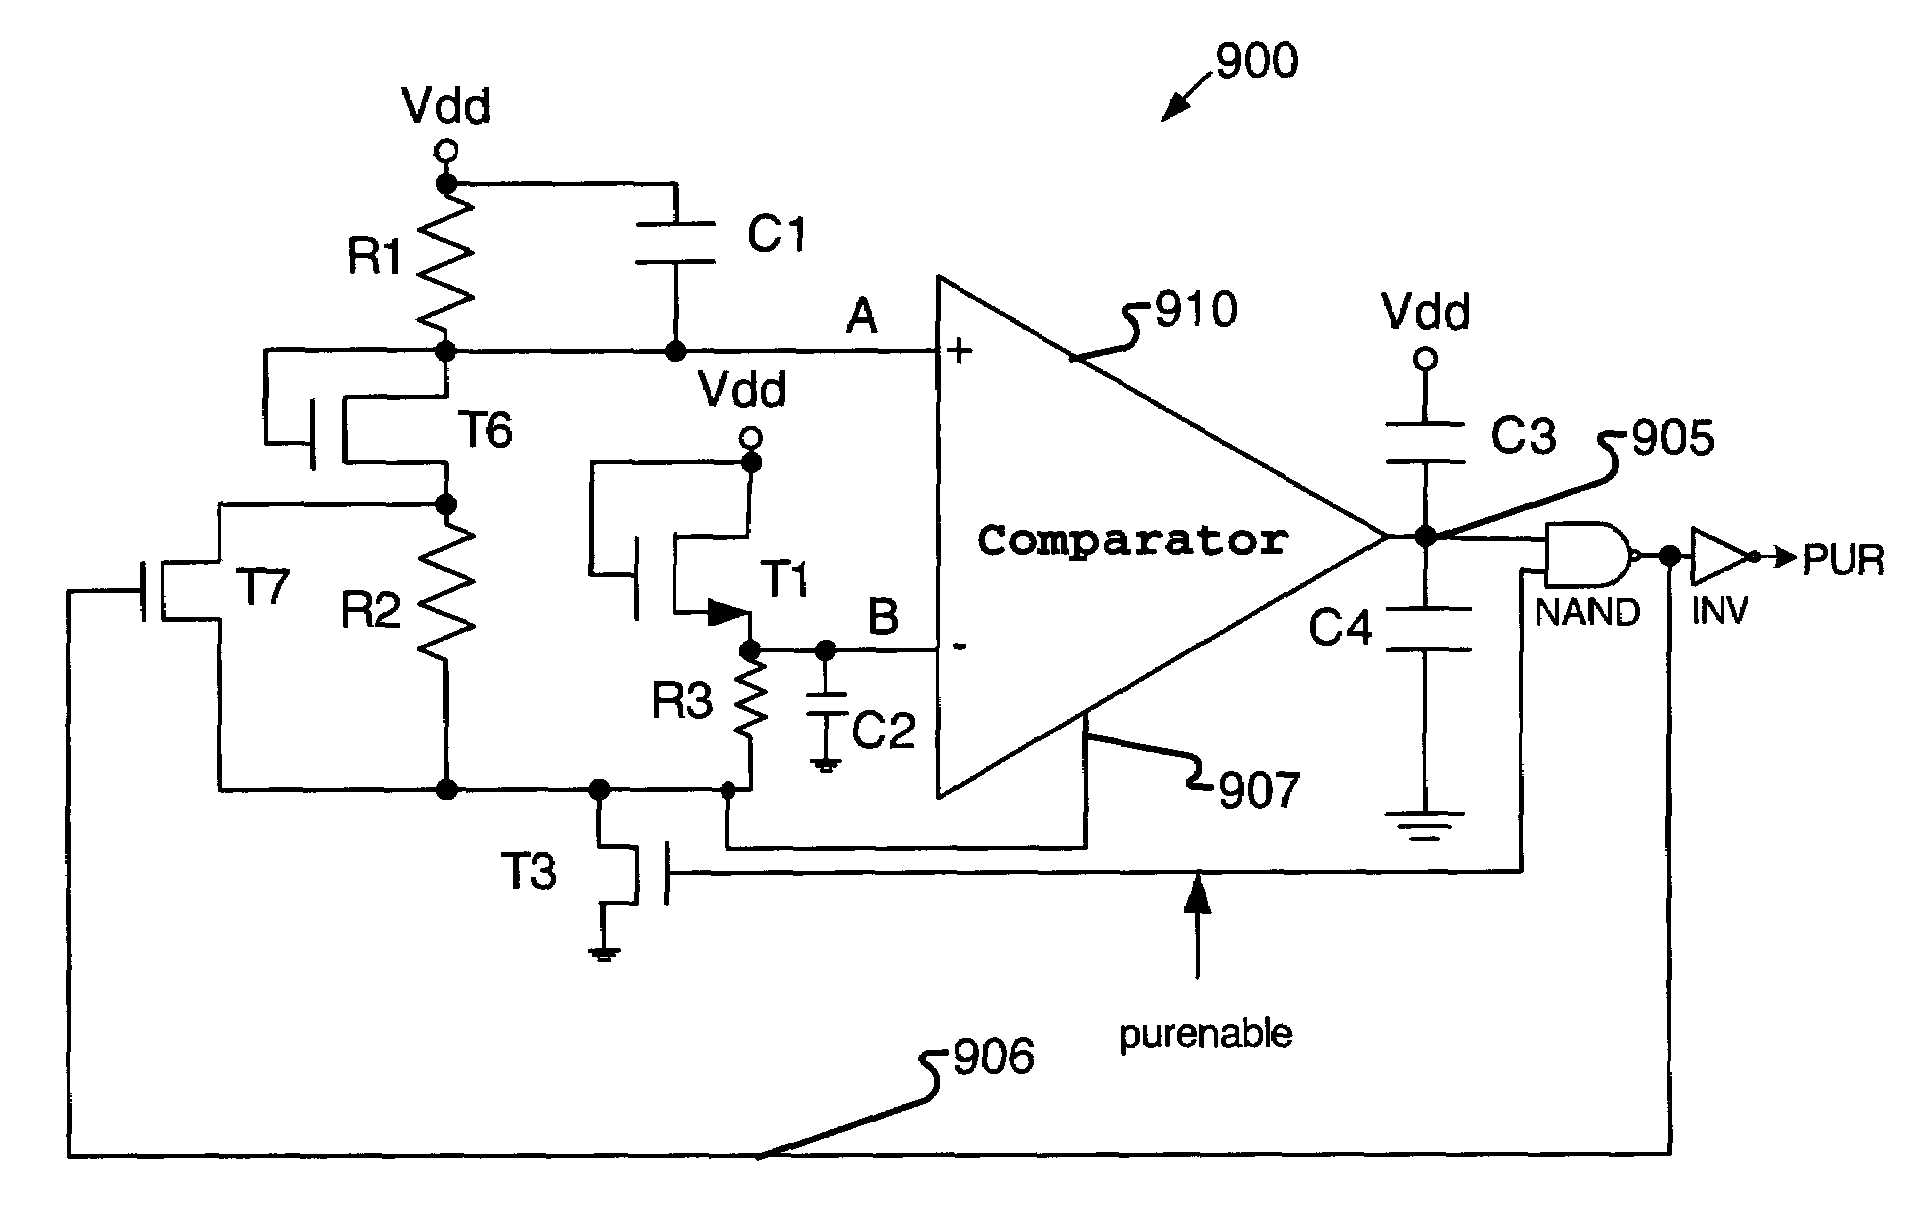 Voltage detector